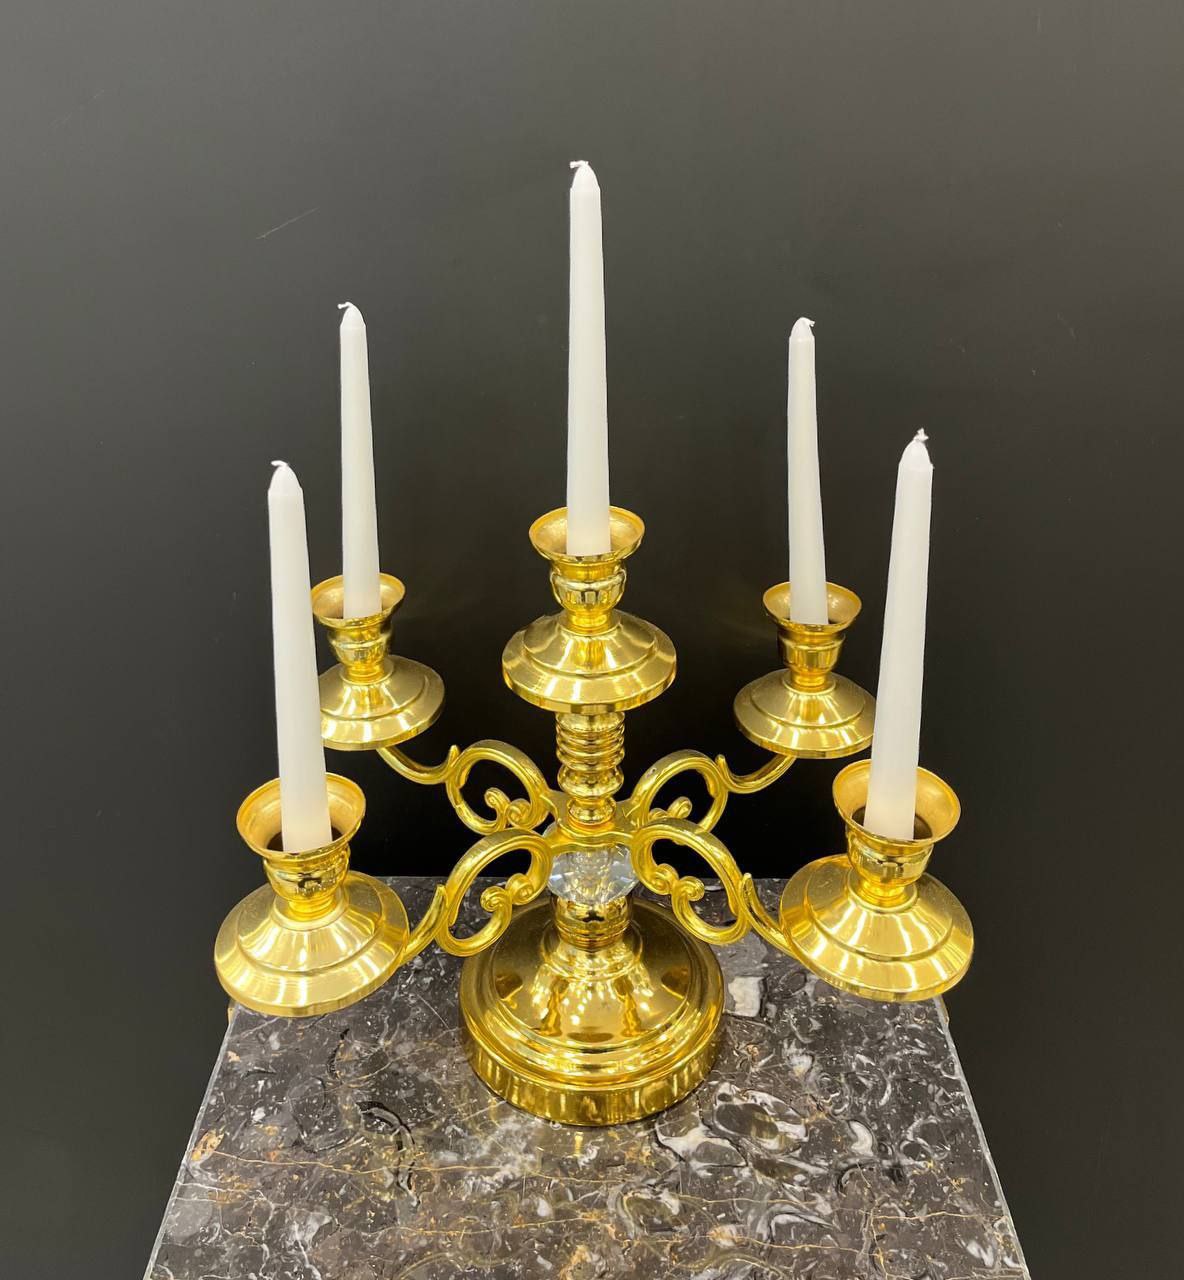 جاشمعی پنج شعله ژورنالی رومیزی طلایی کد11141